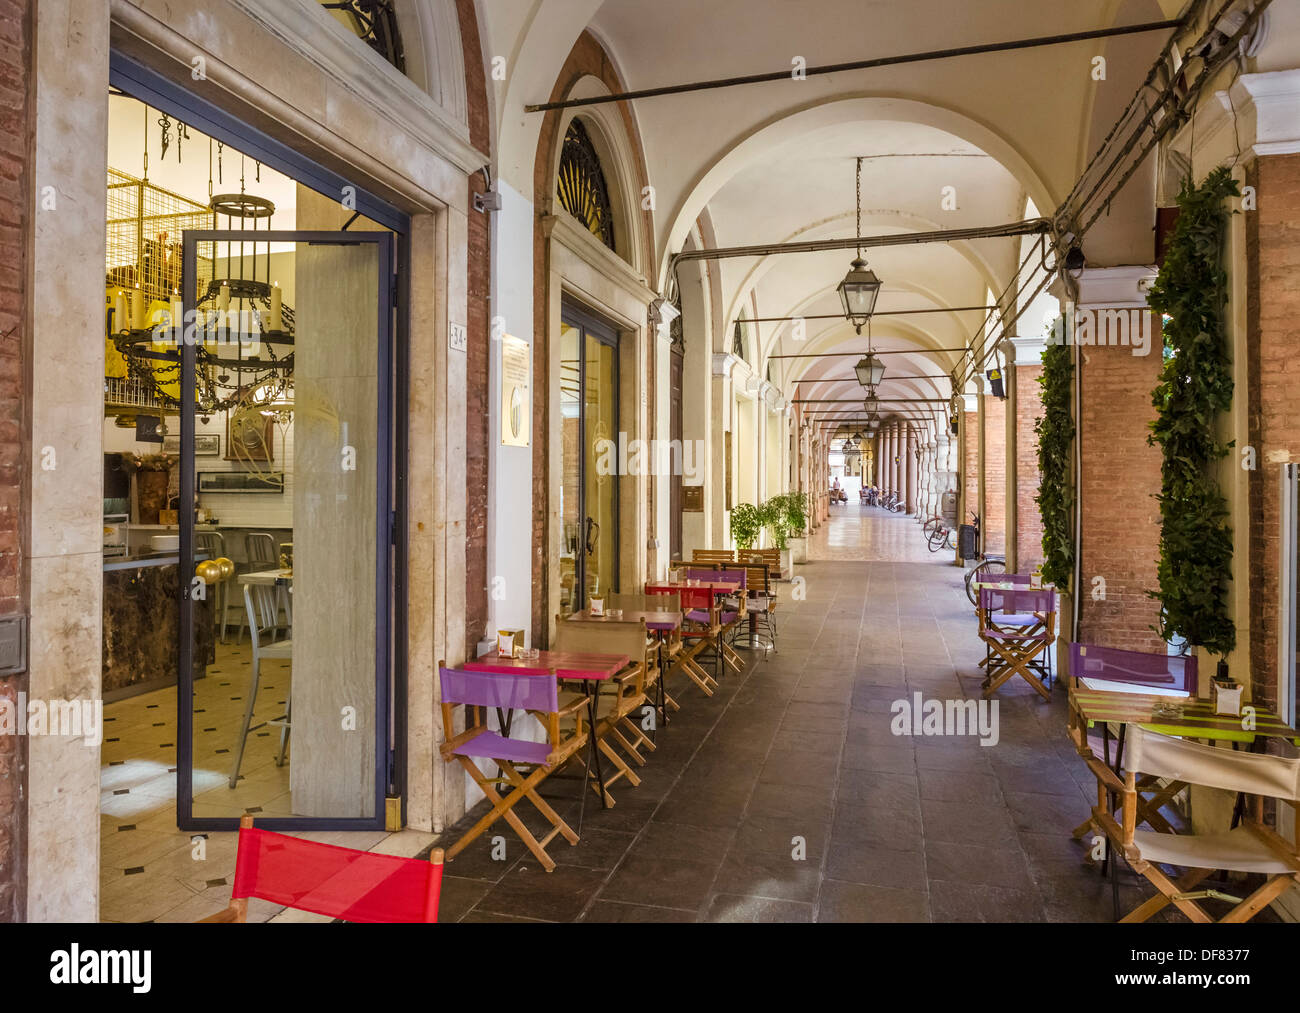 Cafe in a portico on Via San Carlo in the historic city centre, Modena, Emilia Romagna, Italy Stock Photo